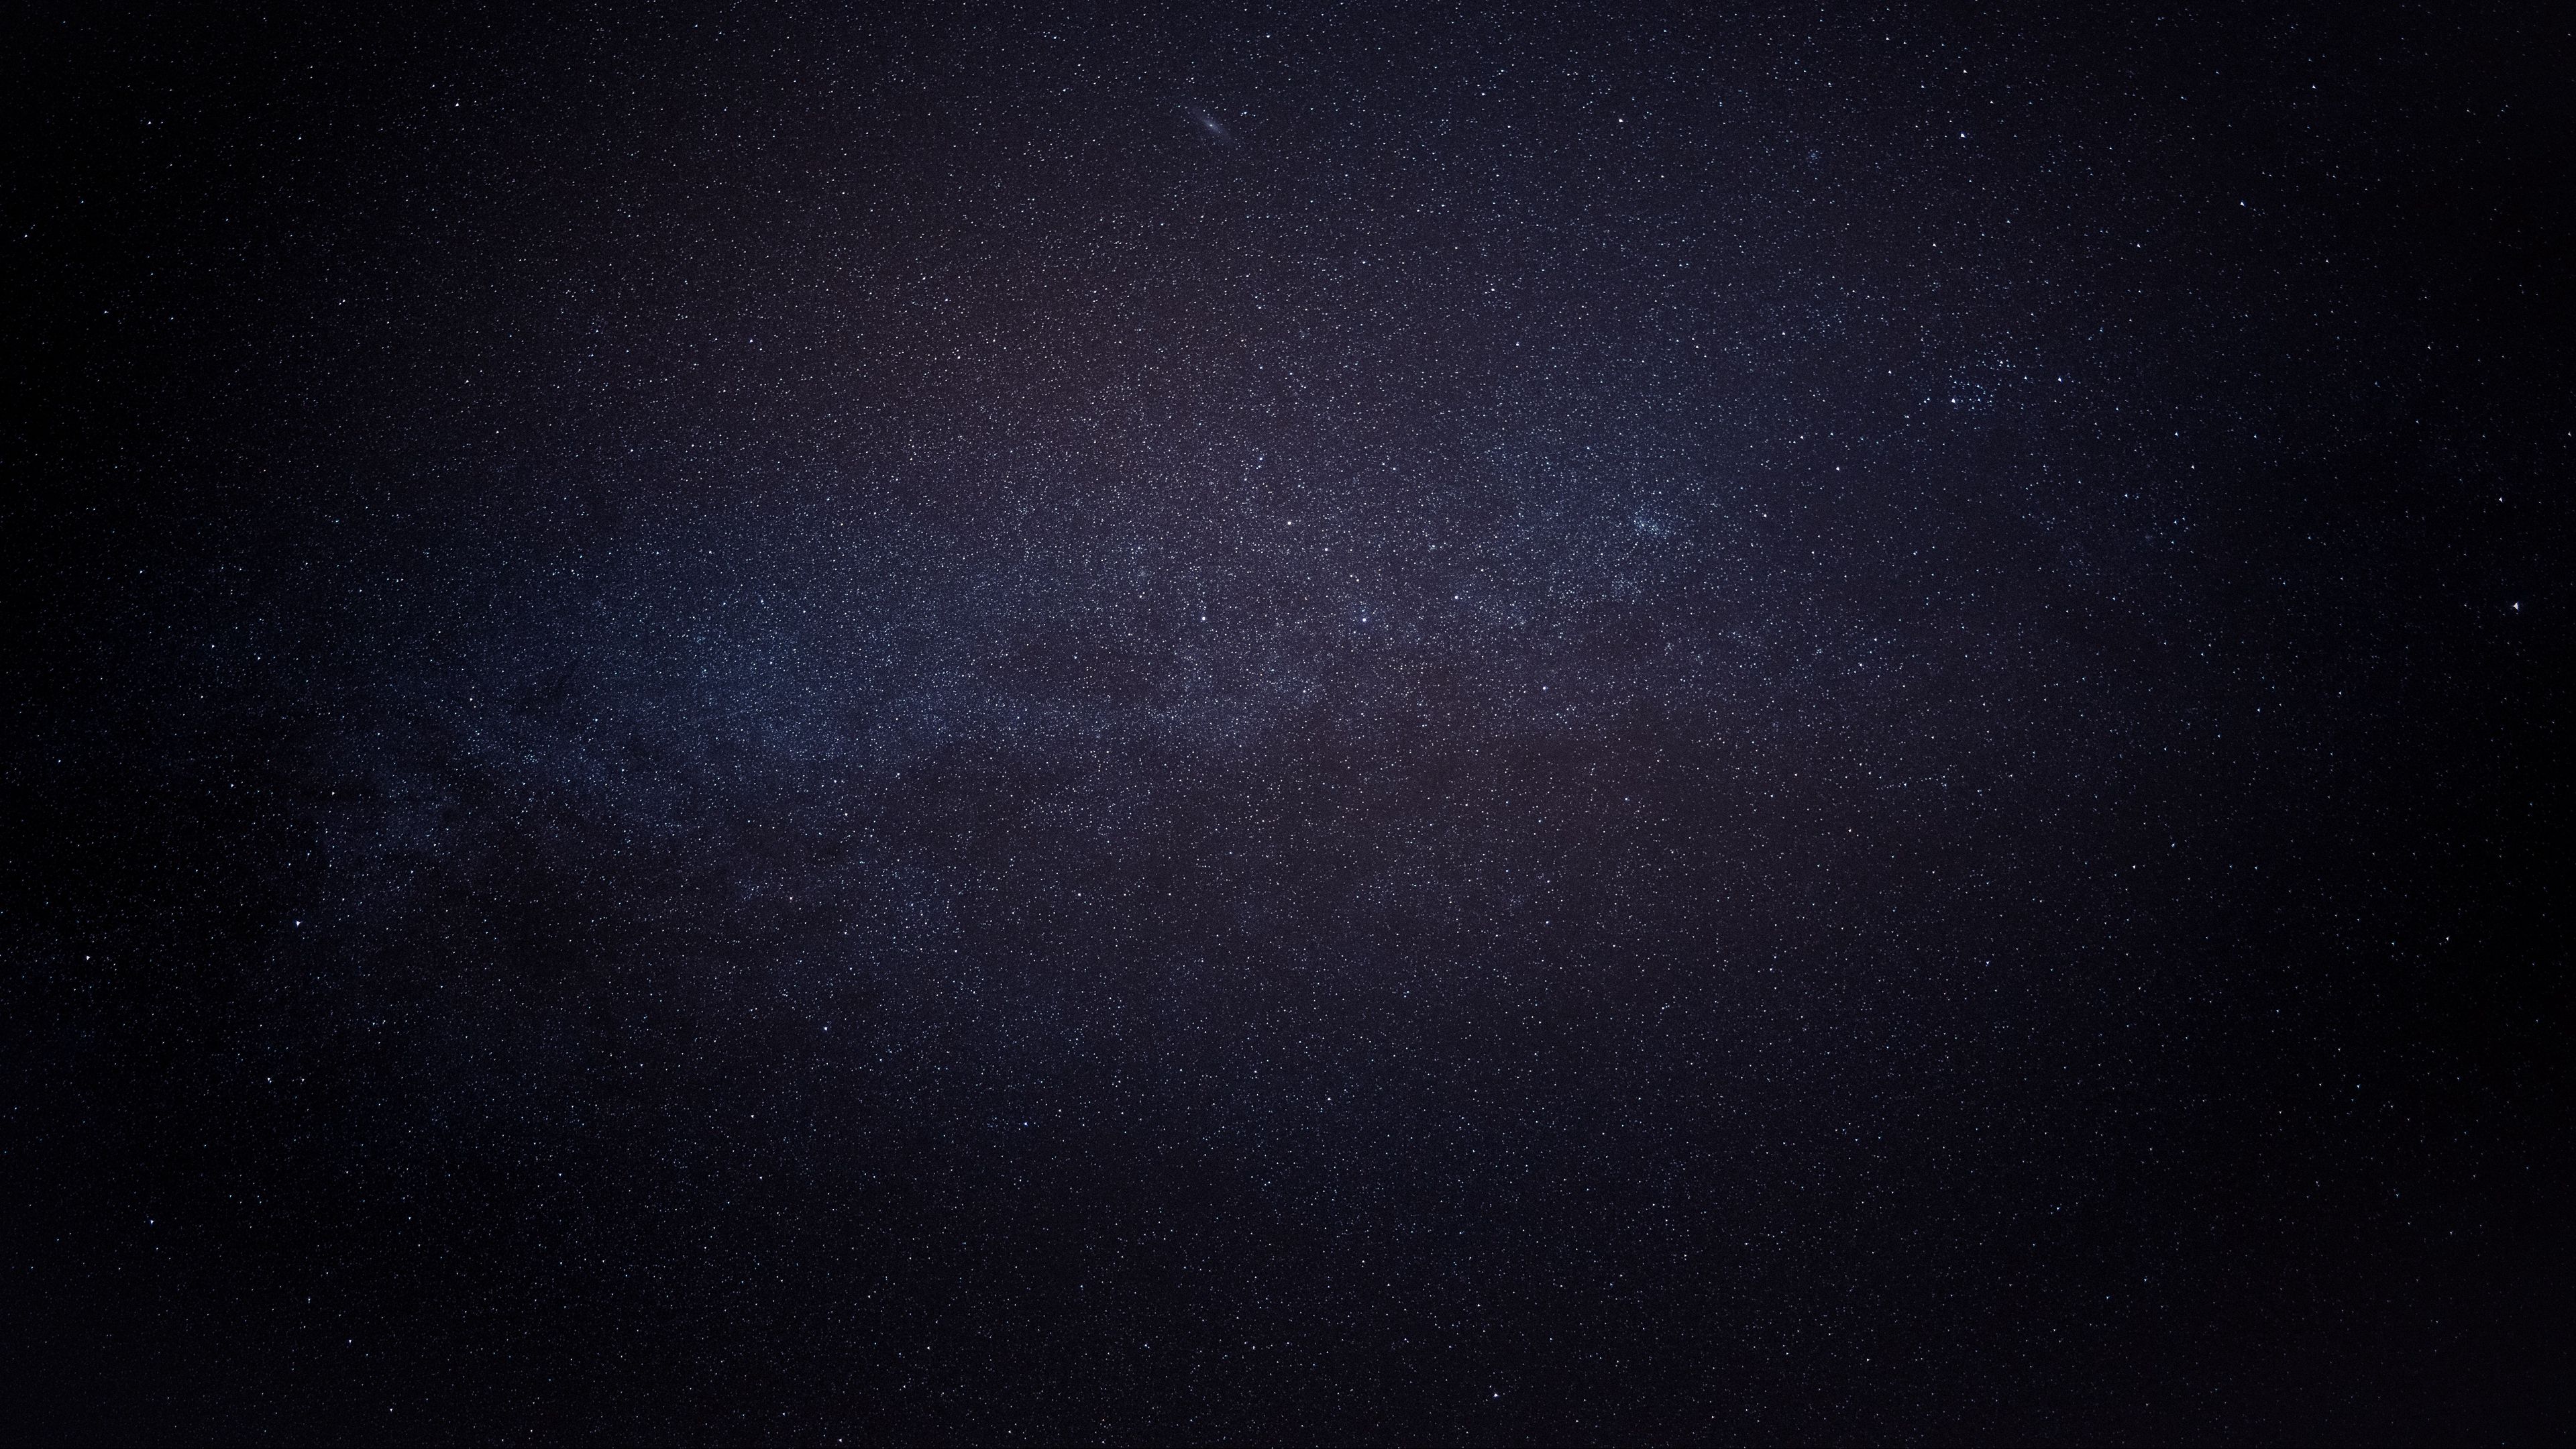 Hãy trải nghiệm một trận chuỗi thời gian qua các vì sao với Universe wallpaper. Với những hình ảnh tuyệt đẹp về các thiên hà bao la, hệ thống mặt trời như hoạt động, bạn như là lạc vào một câu chuyện khoa học viễn tưởng. Hãy chuẩn bị cho một hành trình đưa bạn đến những khung cảnh vũ trụ tuyệt đẹp.